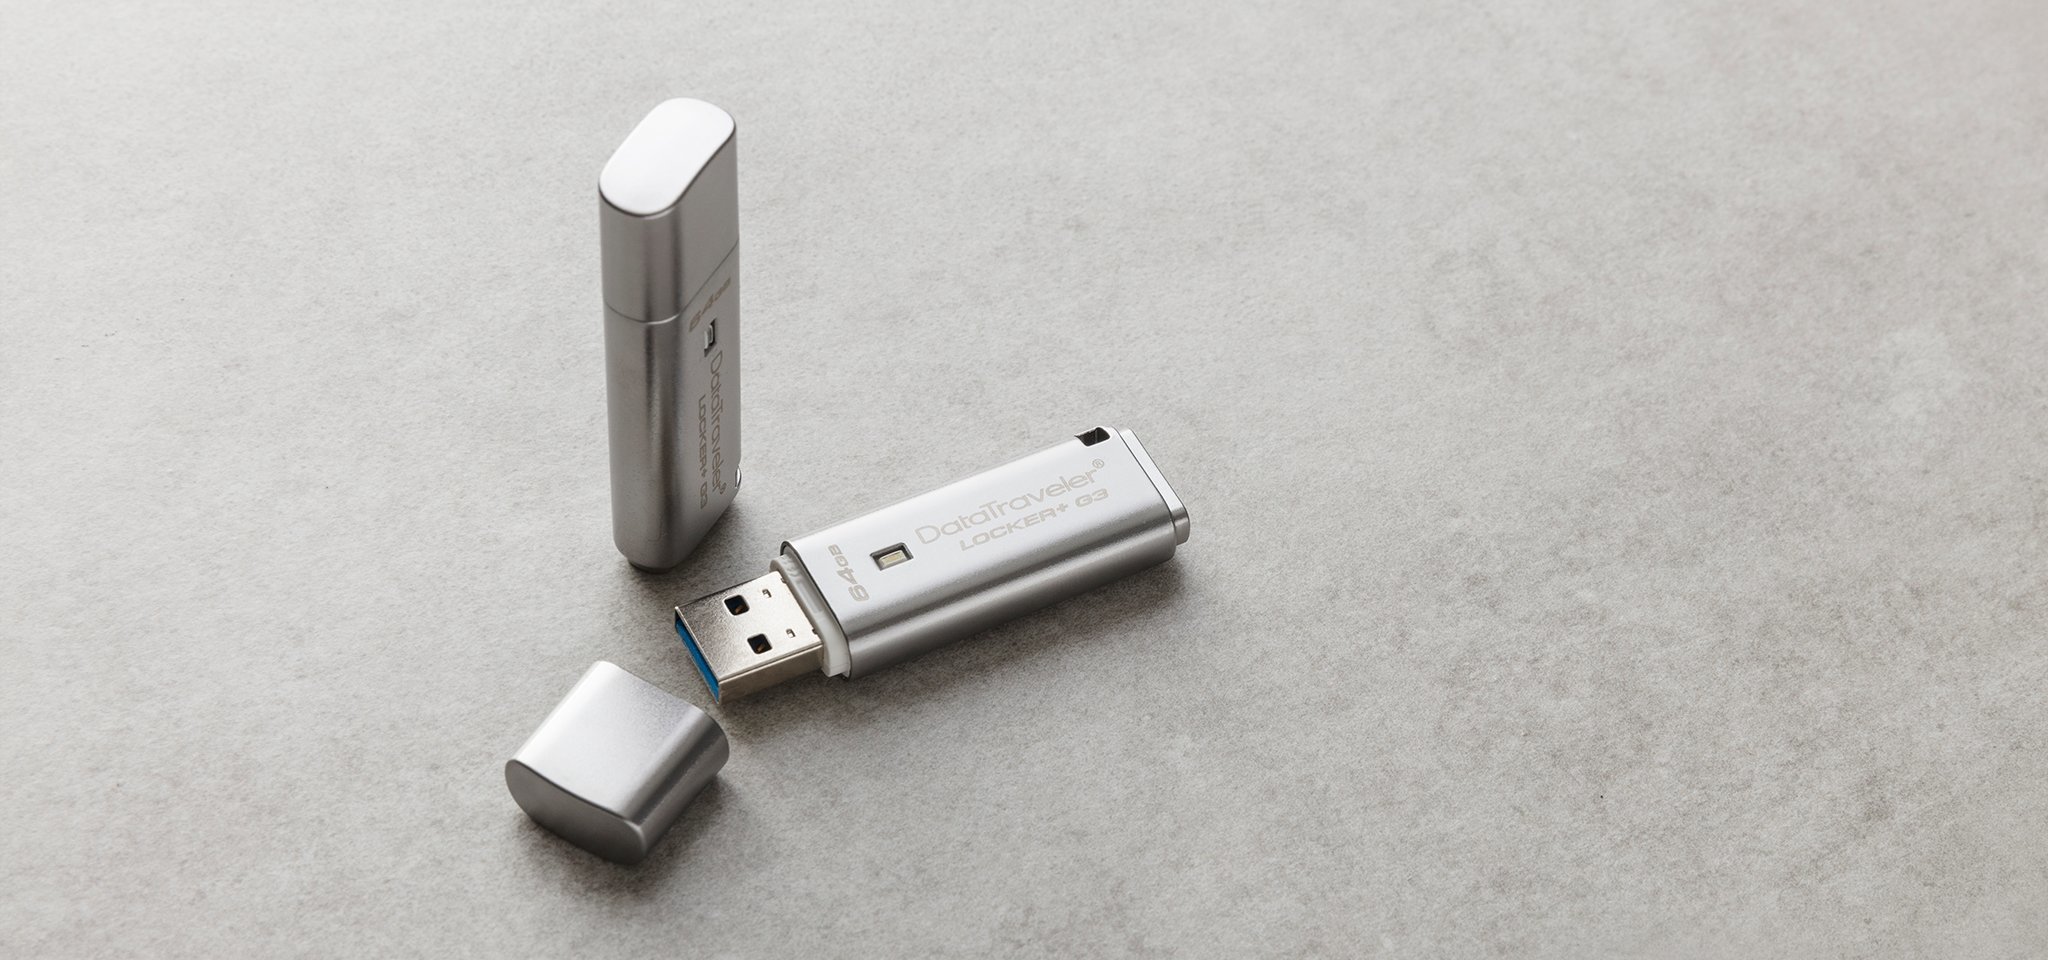 Pamięć Kingston 16GB DataTraveler Locker+ G3 USB 3.0 135MB/s DTLPG3/16GB szary widok od przodu na dwa produkty, jeden pendrive ze zdjętą osłoną portu